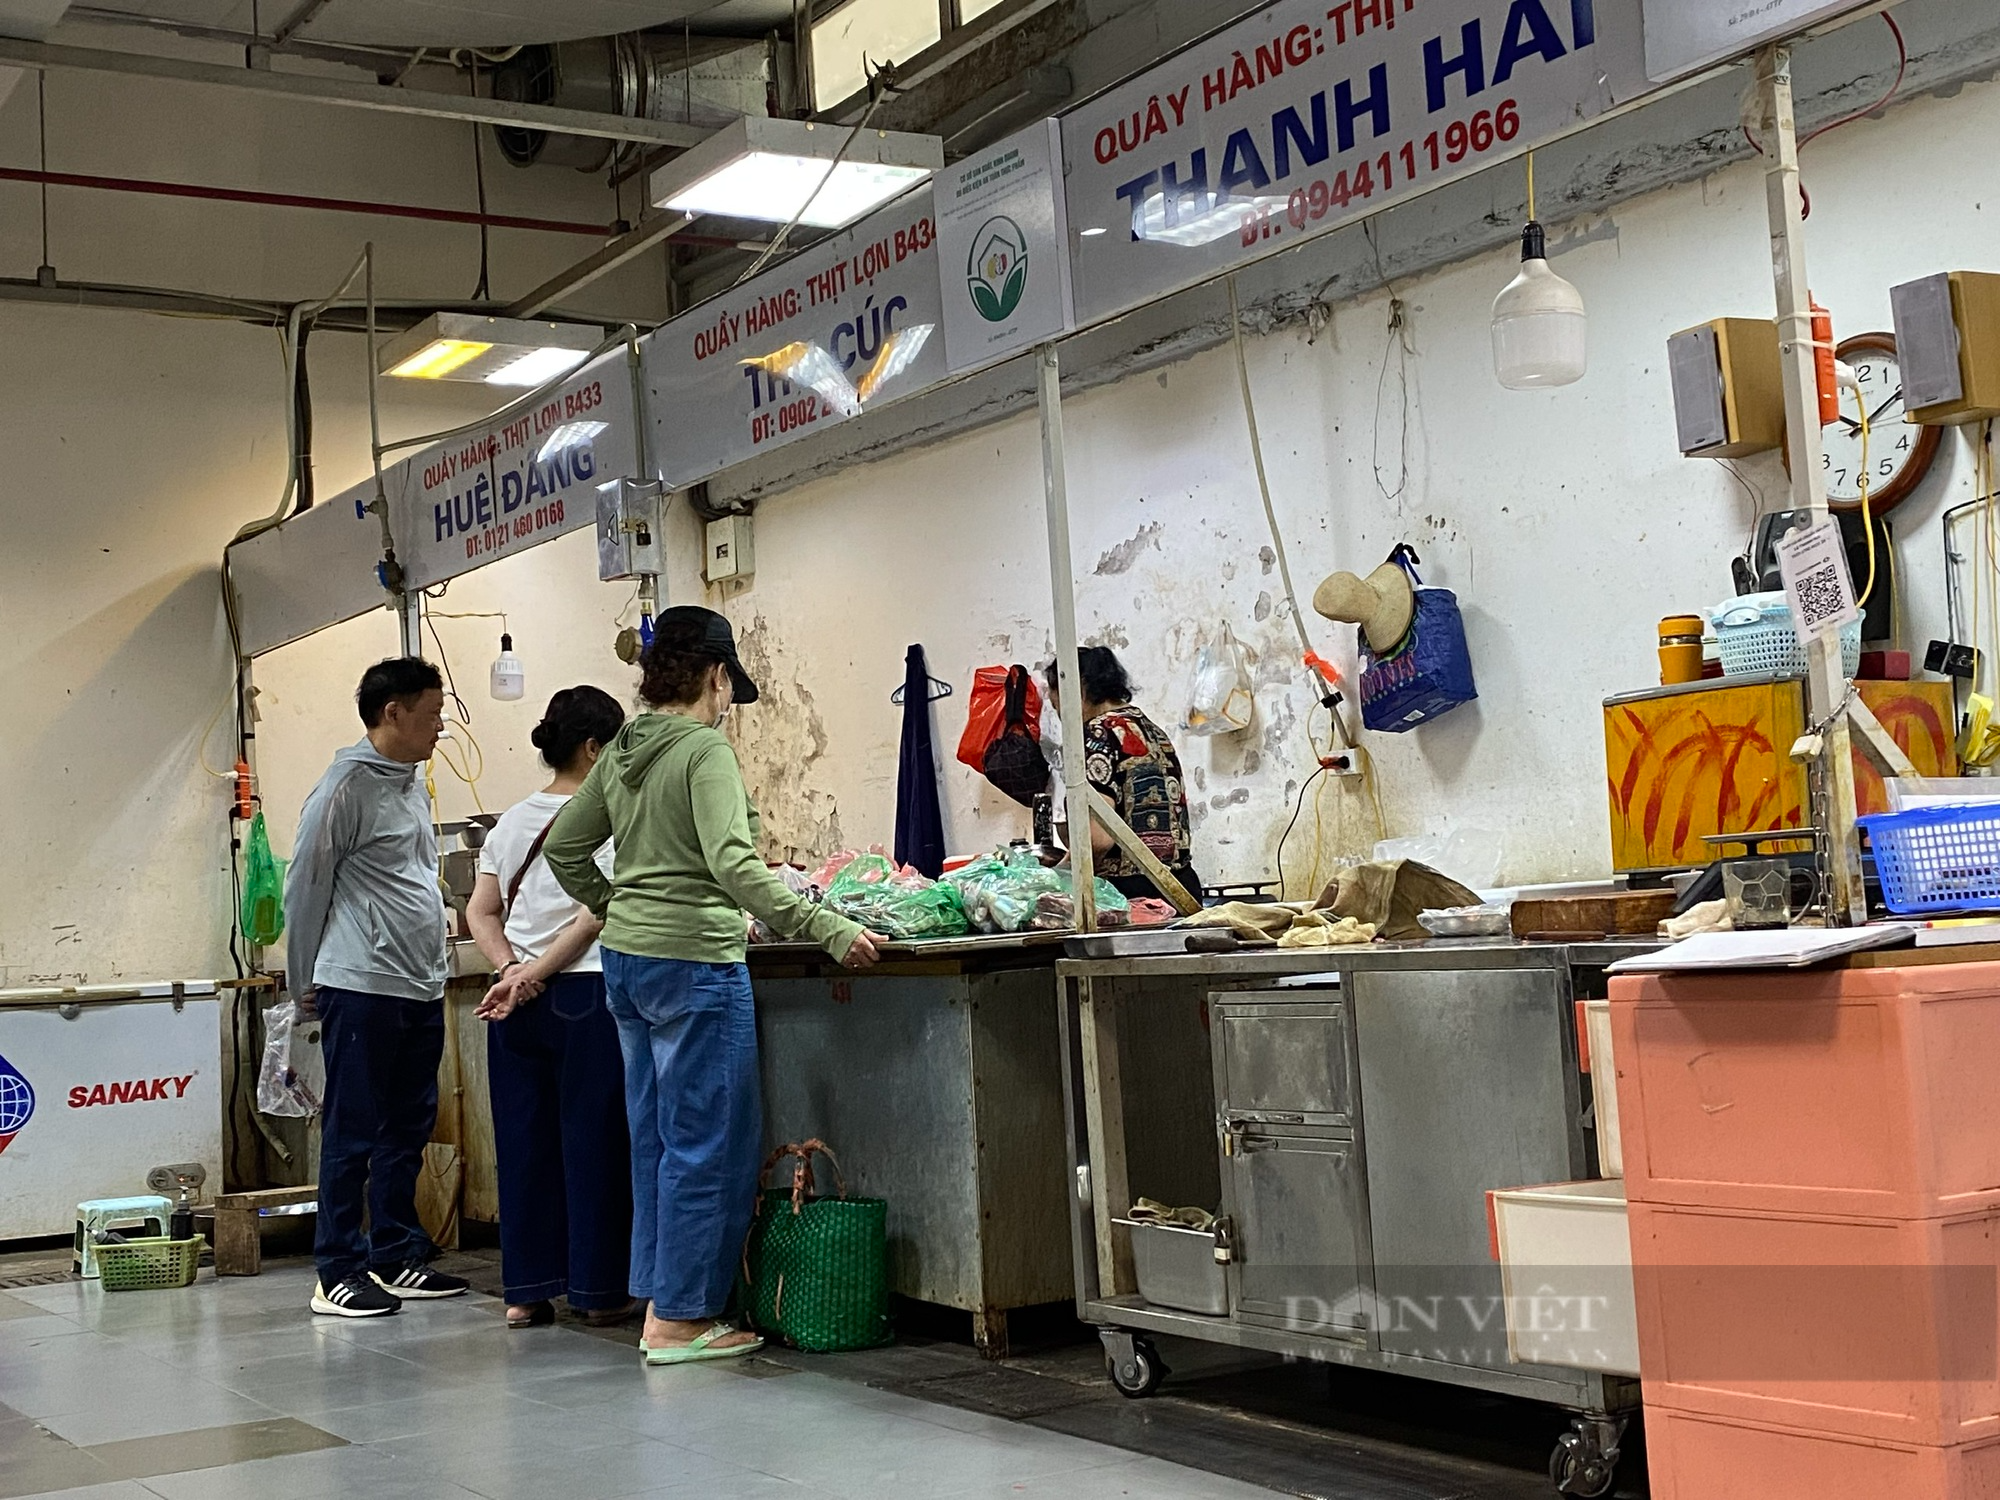 Khu chợ nổi tiếng tại trung tâm Thủ đô ế ẩm, tiểu thương ngồi đan len, lướt điện thoại - Ảnh 8.